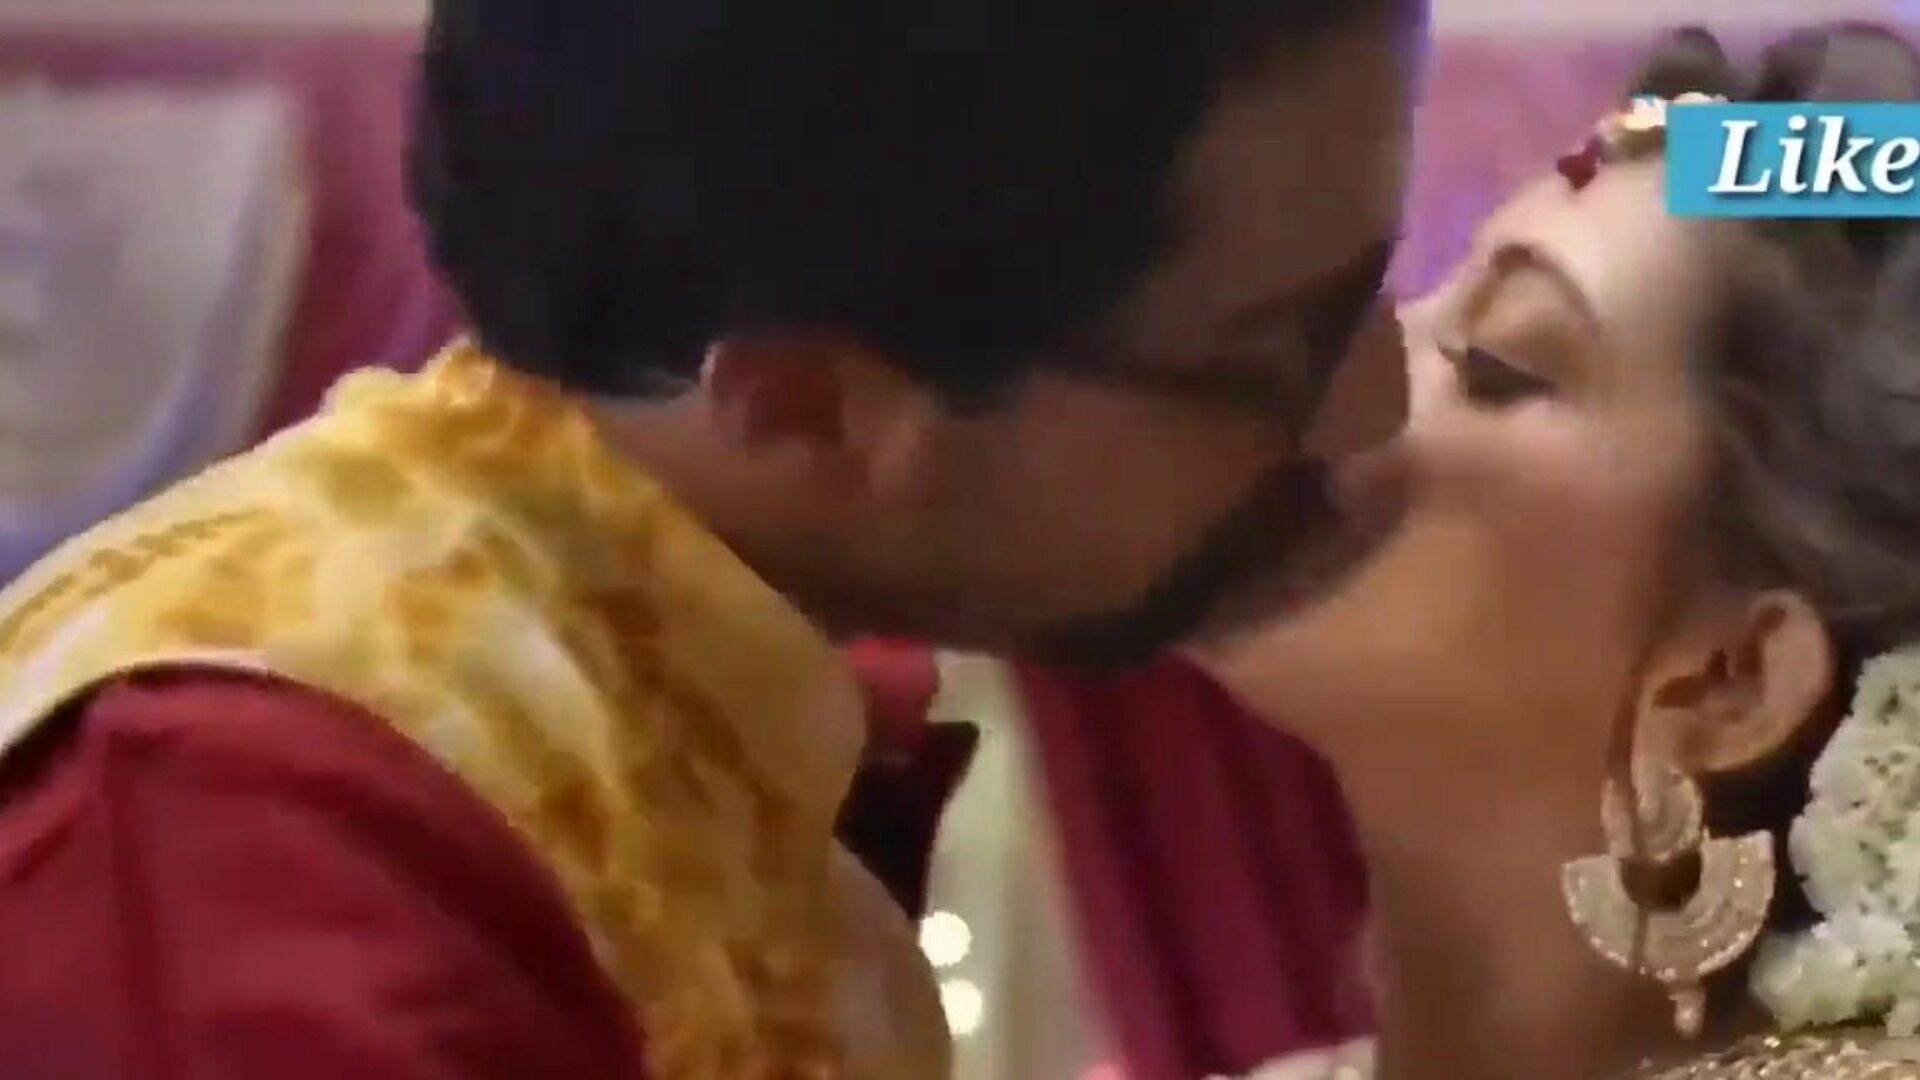 deux frères indiens échangent sa femme et se font baiser dur regarder deux frères indiens échanger sa femme et son film dur baisé sur xhamster - la sélection ultime de tube mobile gratuit et mobile gratuit et de nouveaux films de tube pornographique indien mobile hd